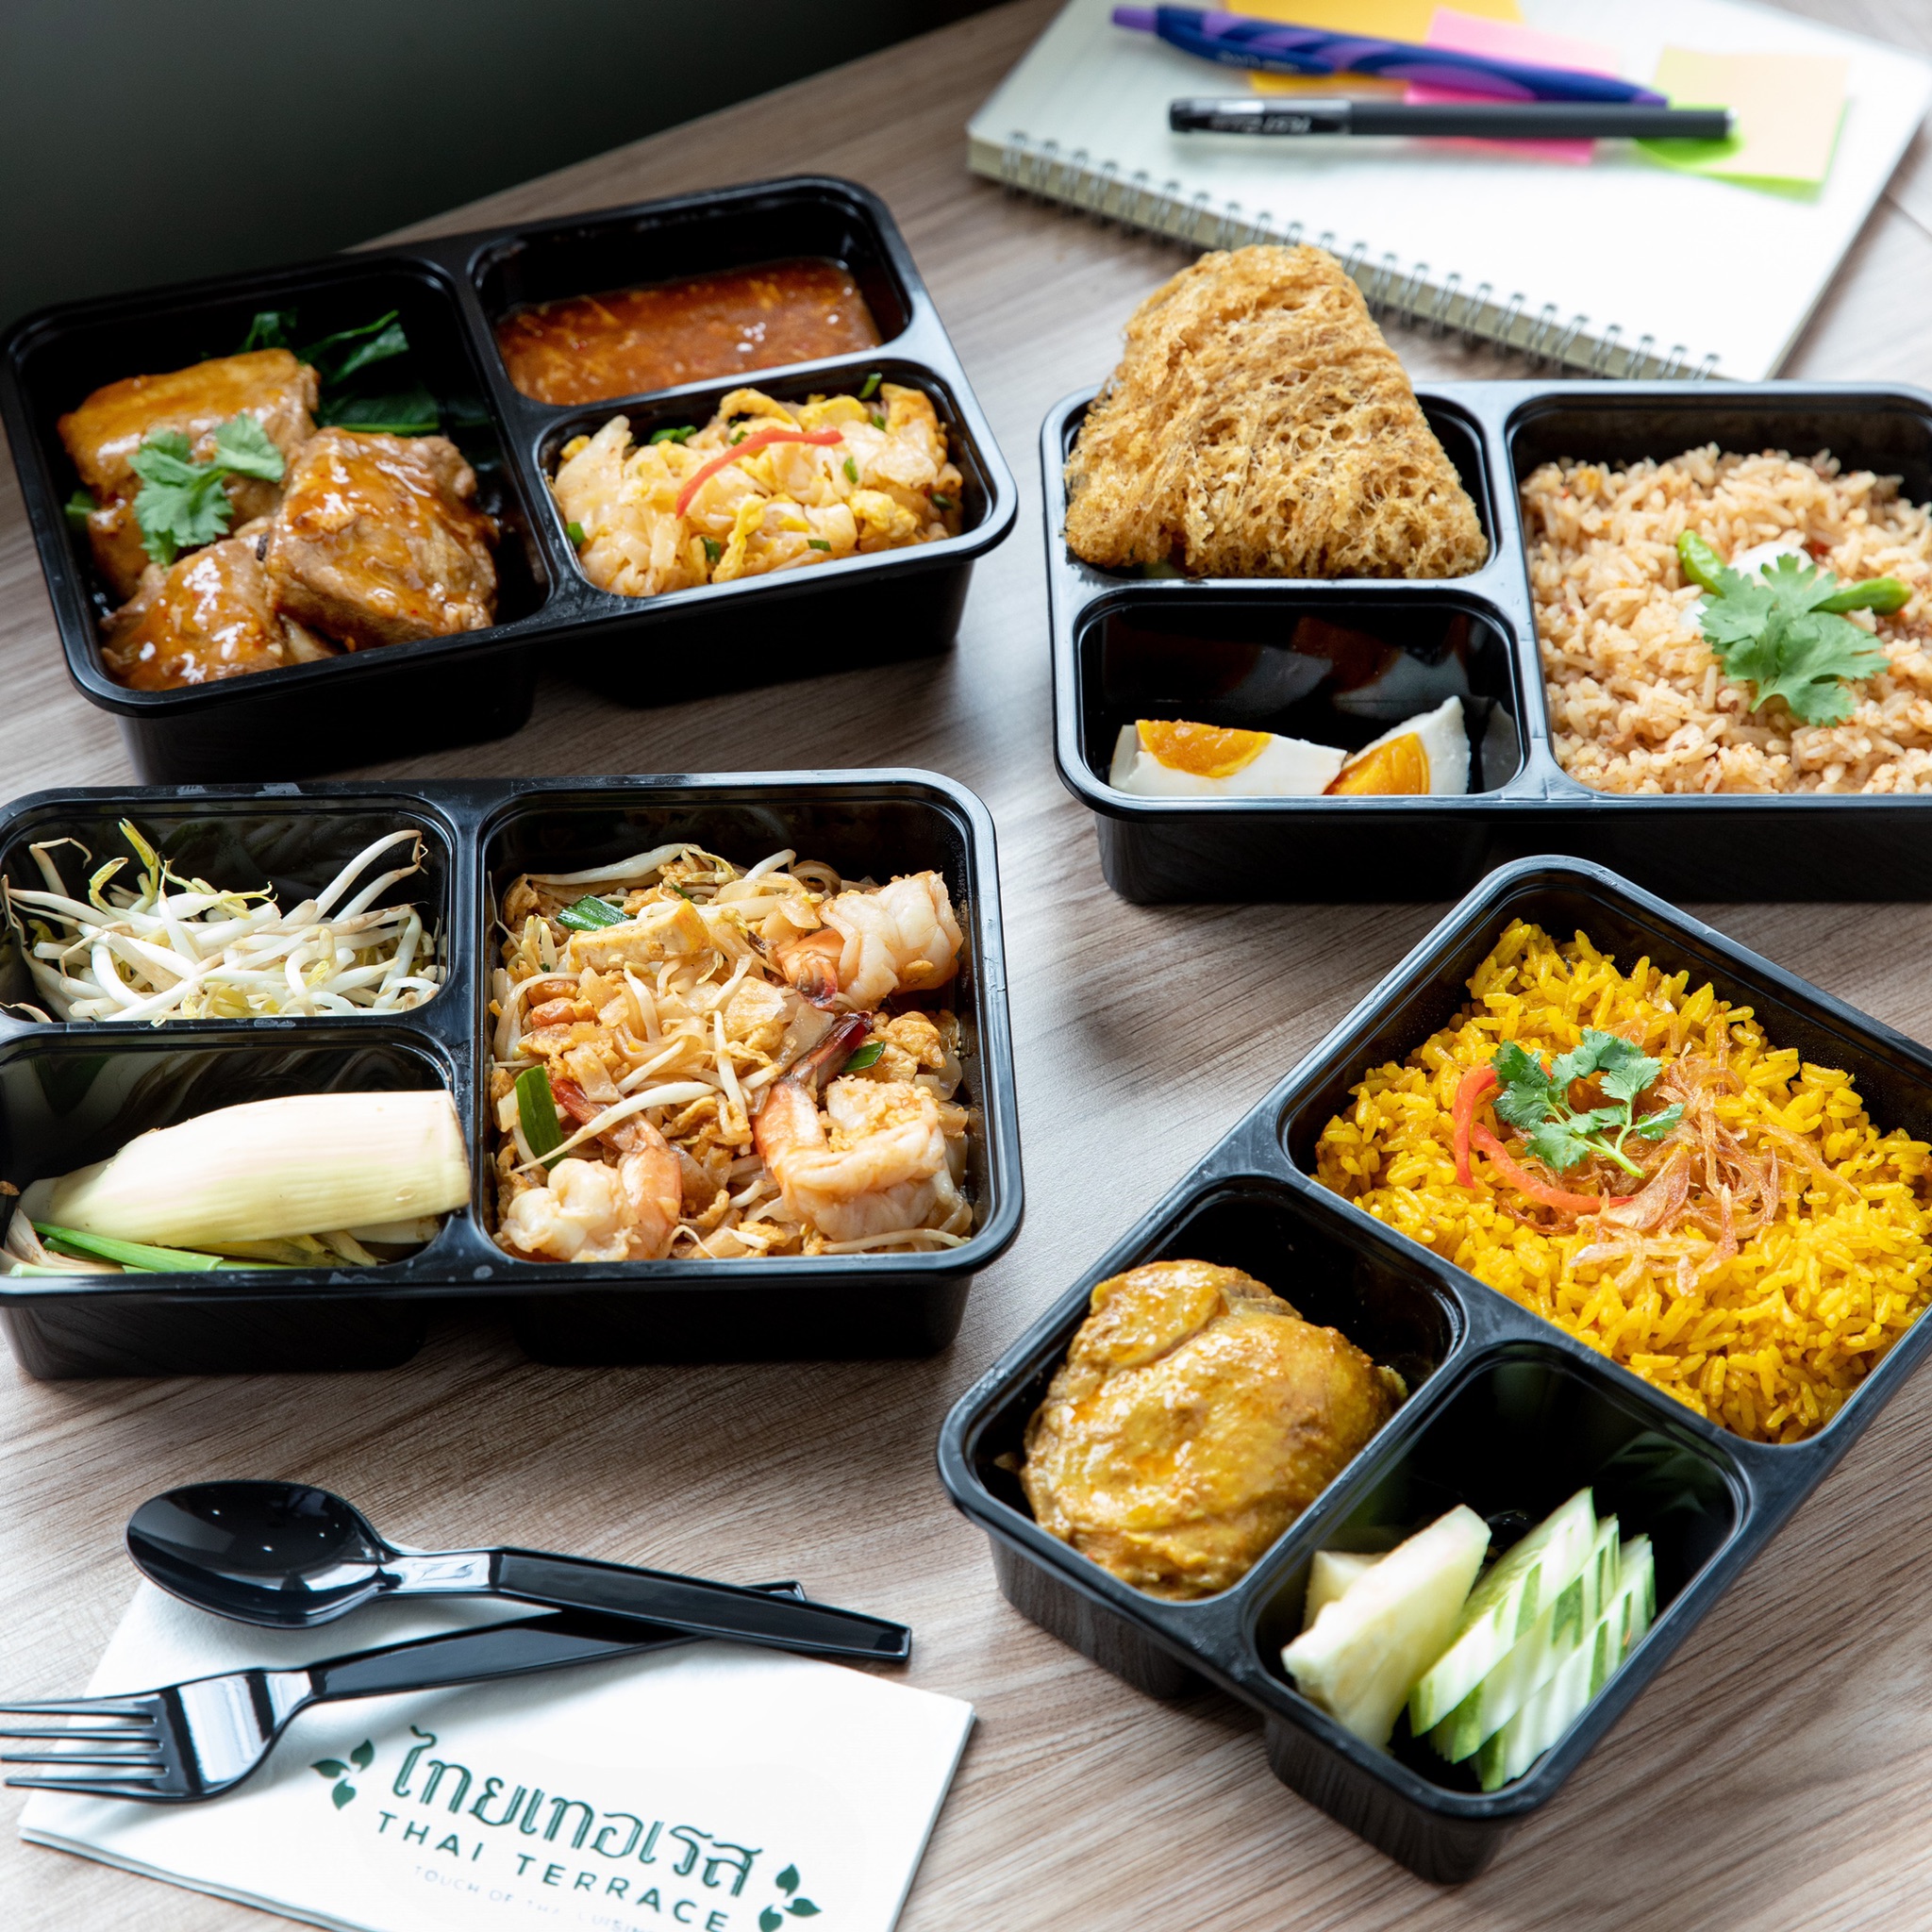 CRG ขนทัพร้านอาหารไทย-จีน เสริมแกร่งดีลิเวอรี่ – ธุรกิจ